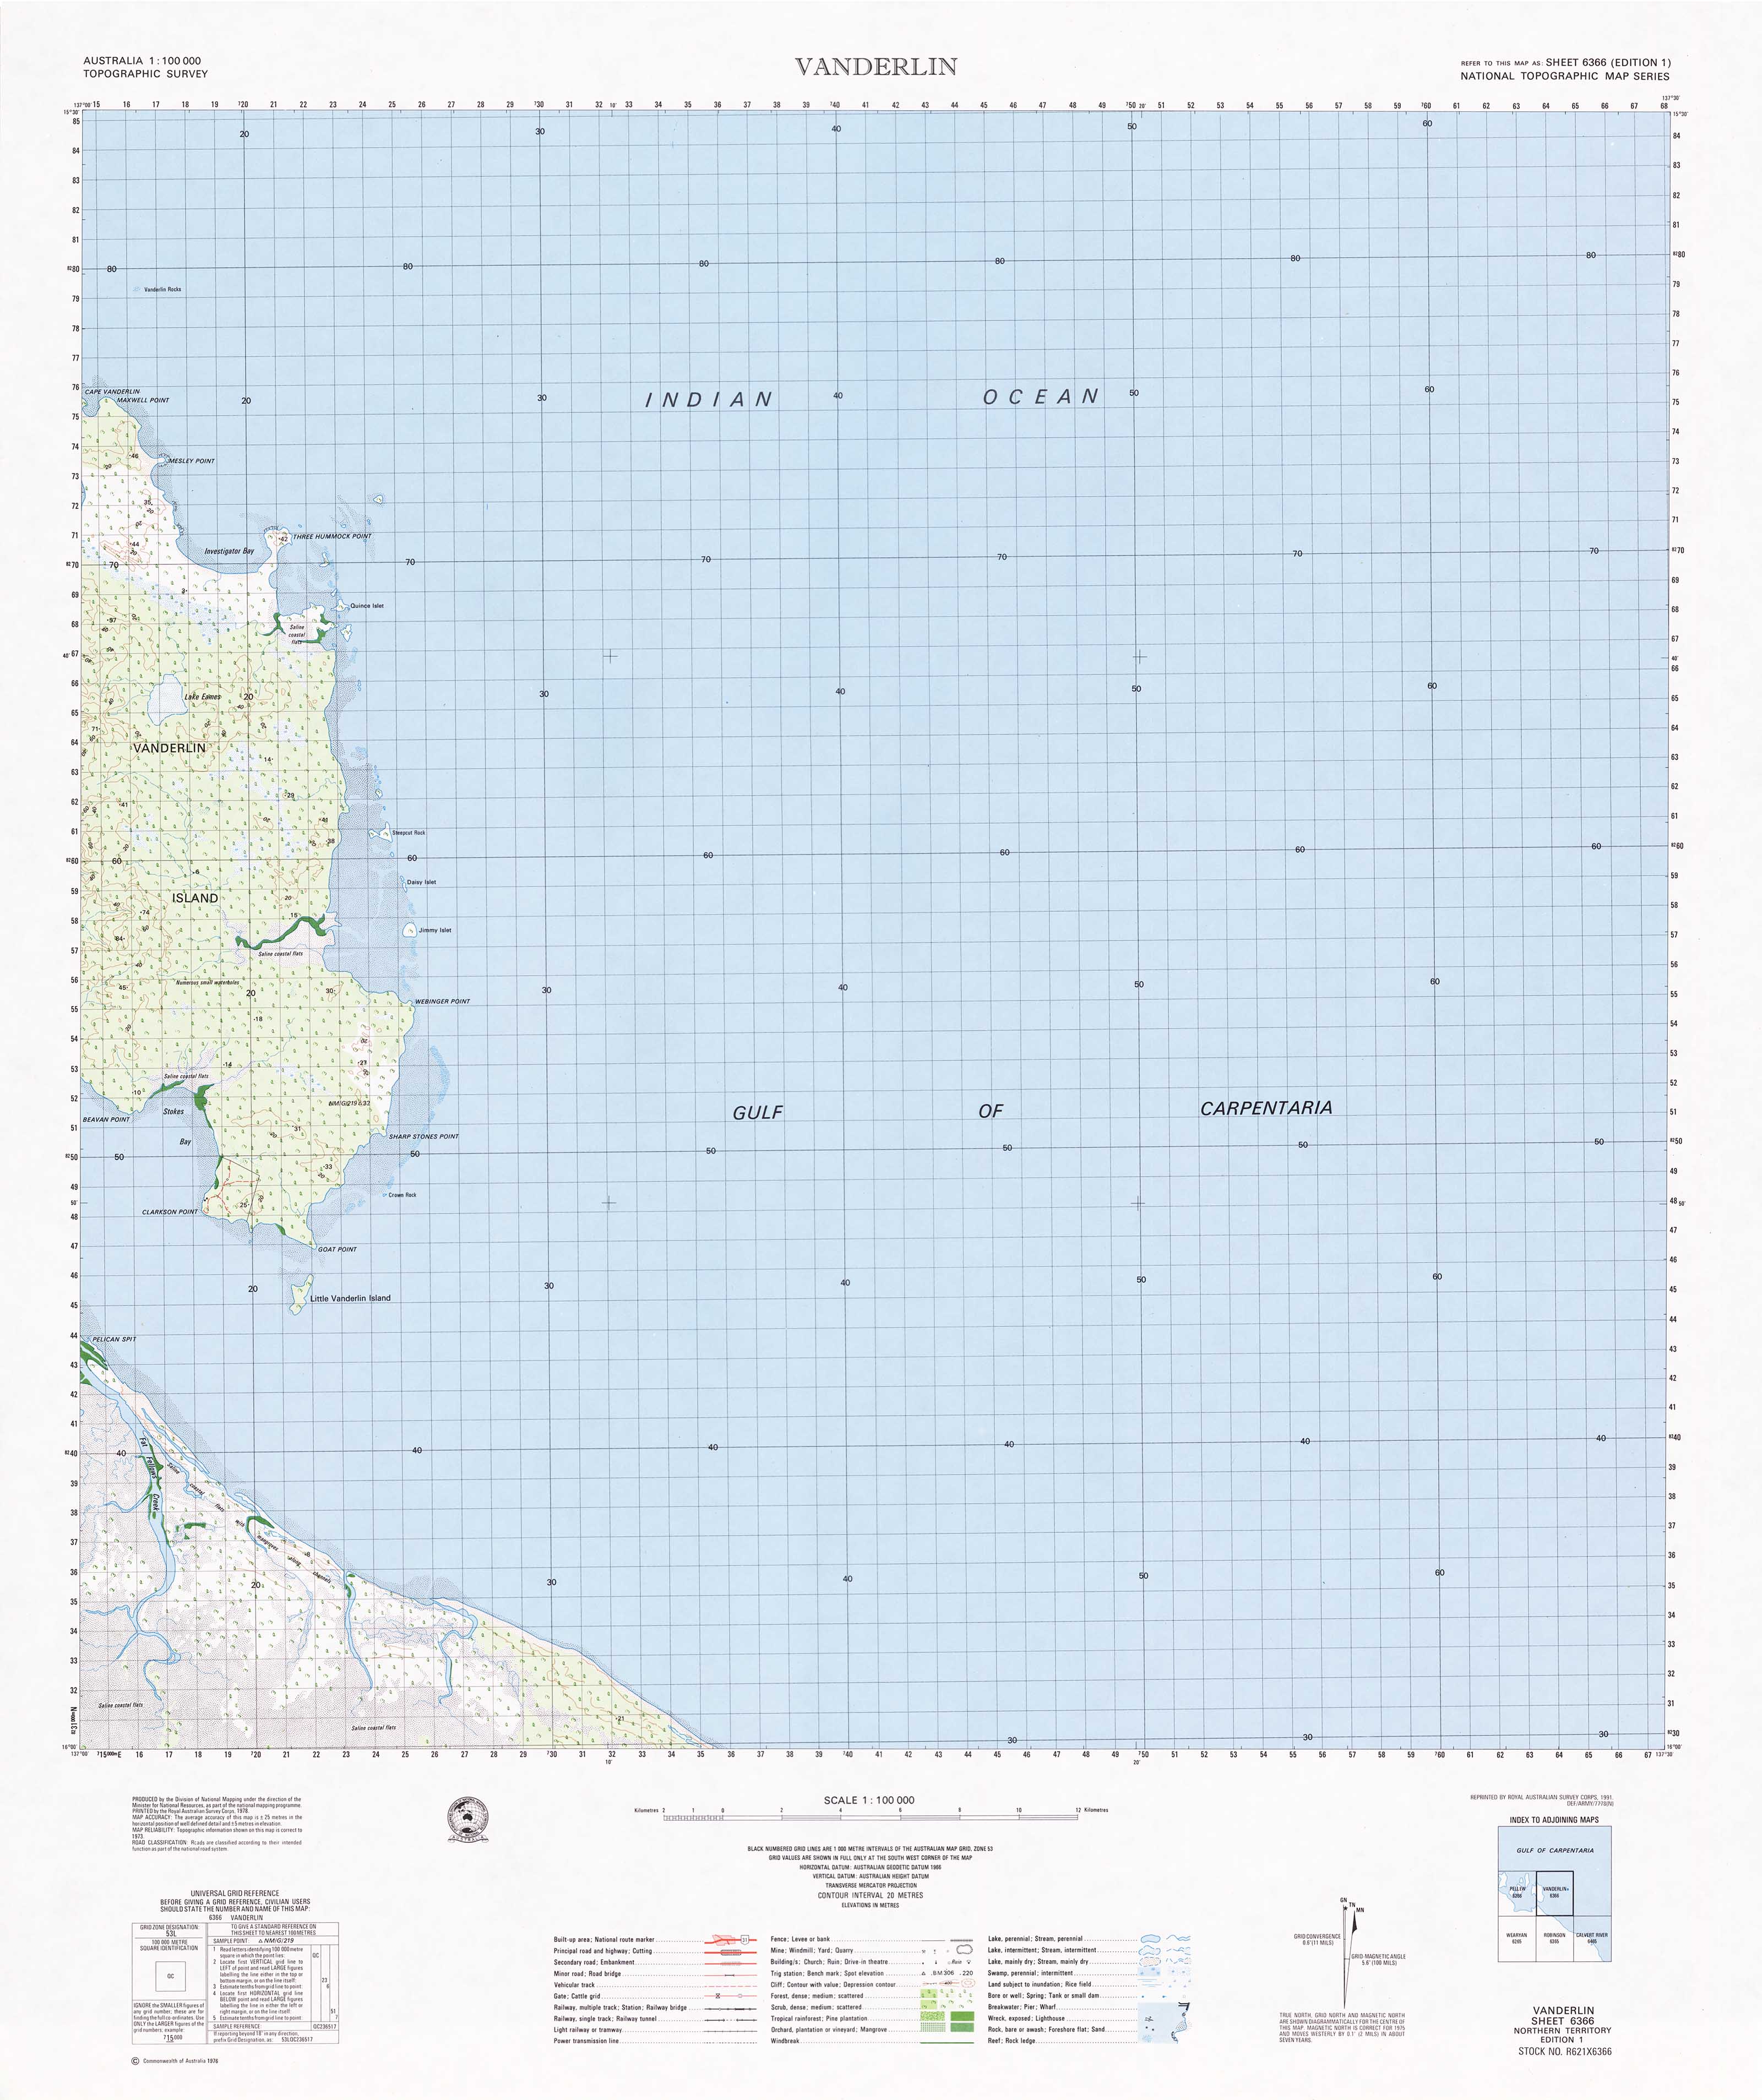 Buy 6366 Vanderlin 1:100k Topographic Map